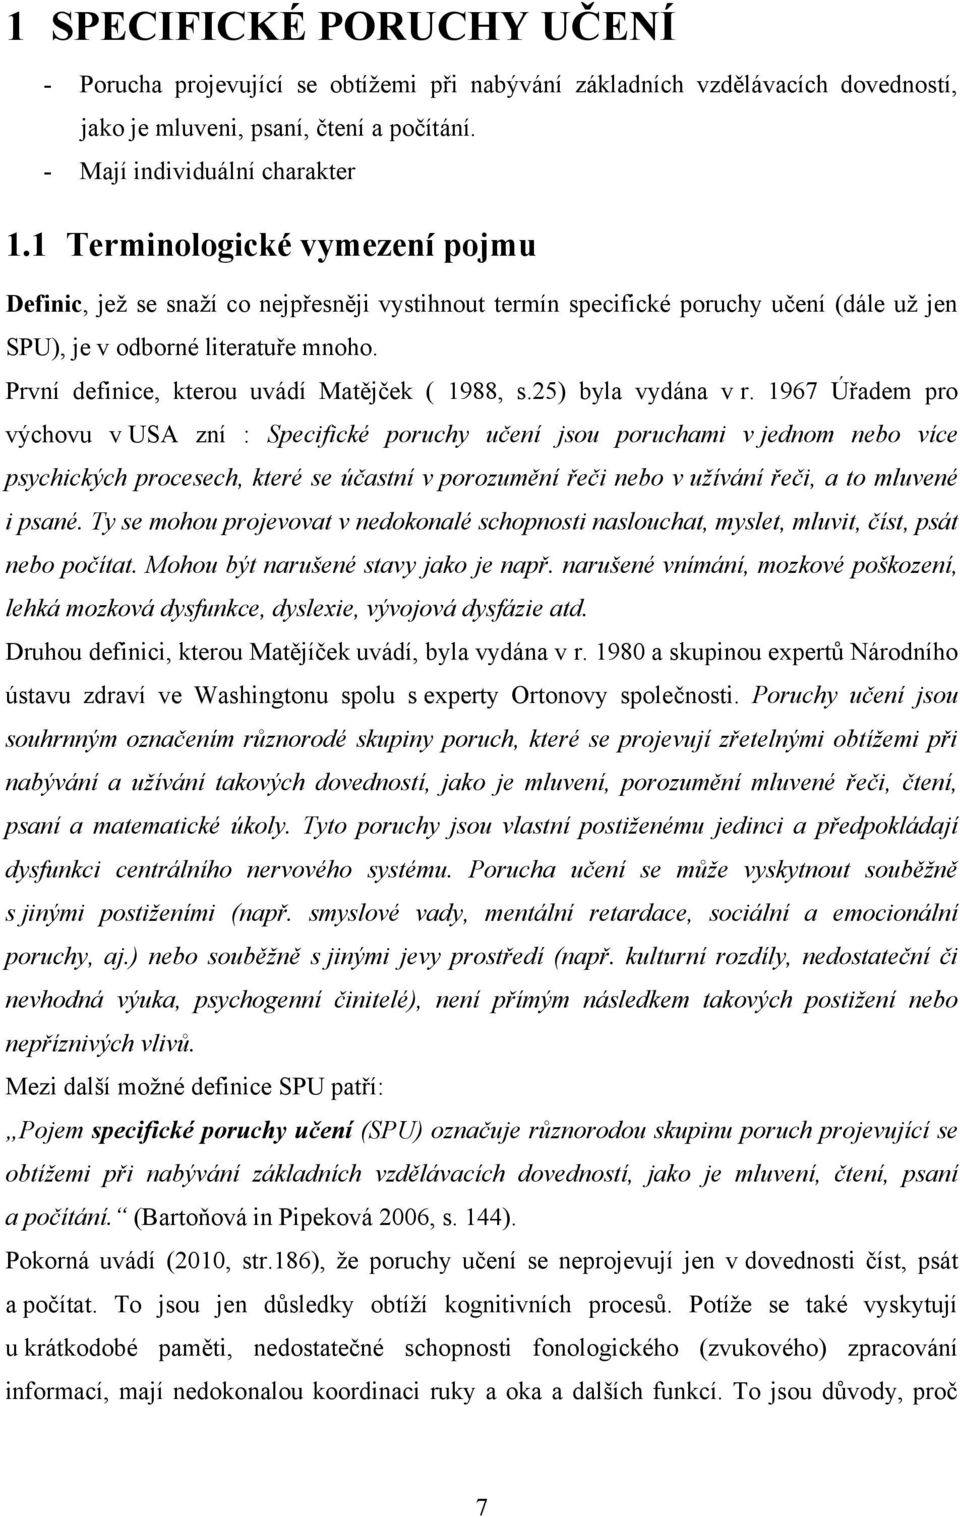 První definice, kterou uvádí Matějček ( 1988, s.25) byla vydána v r.